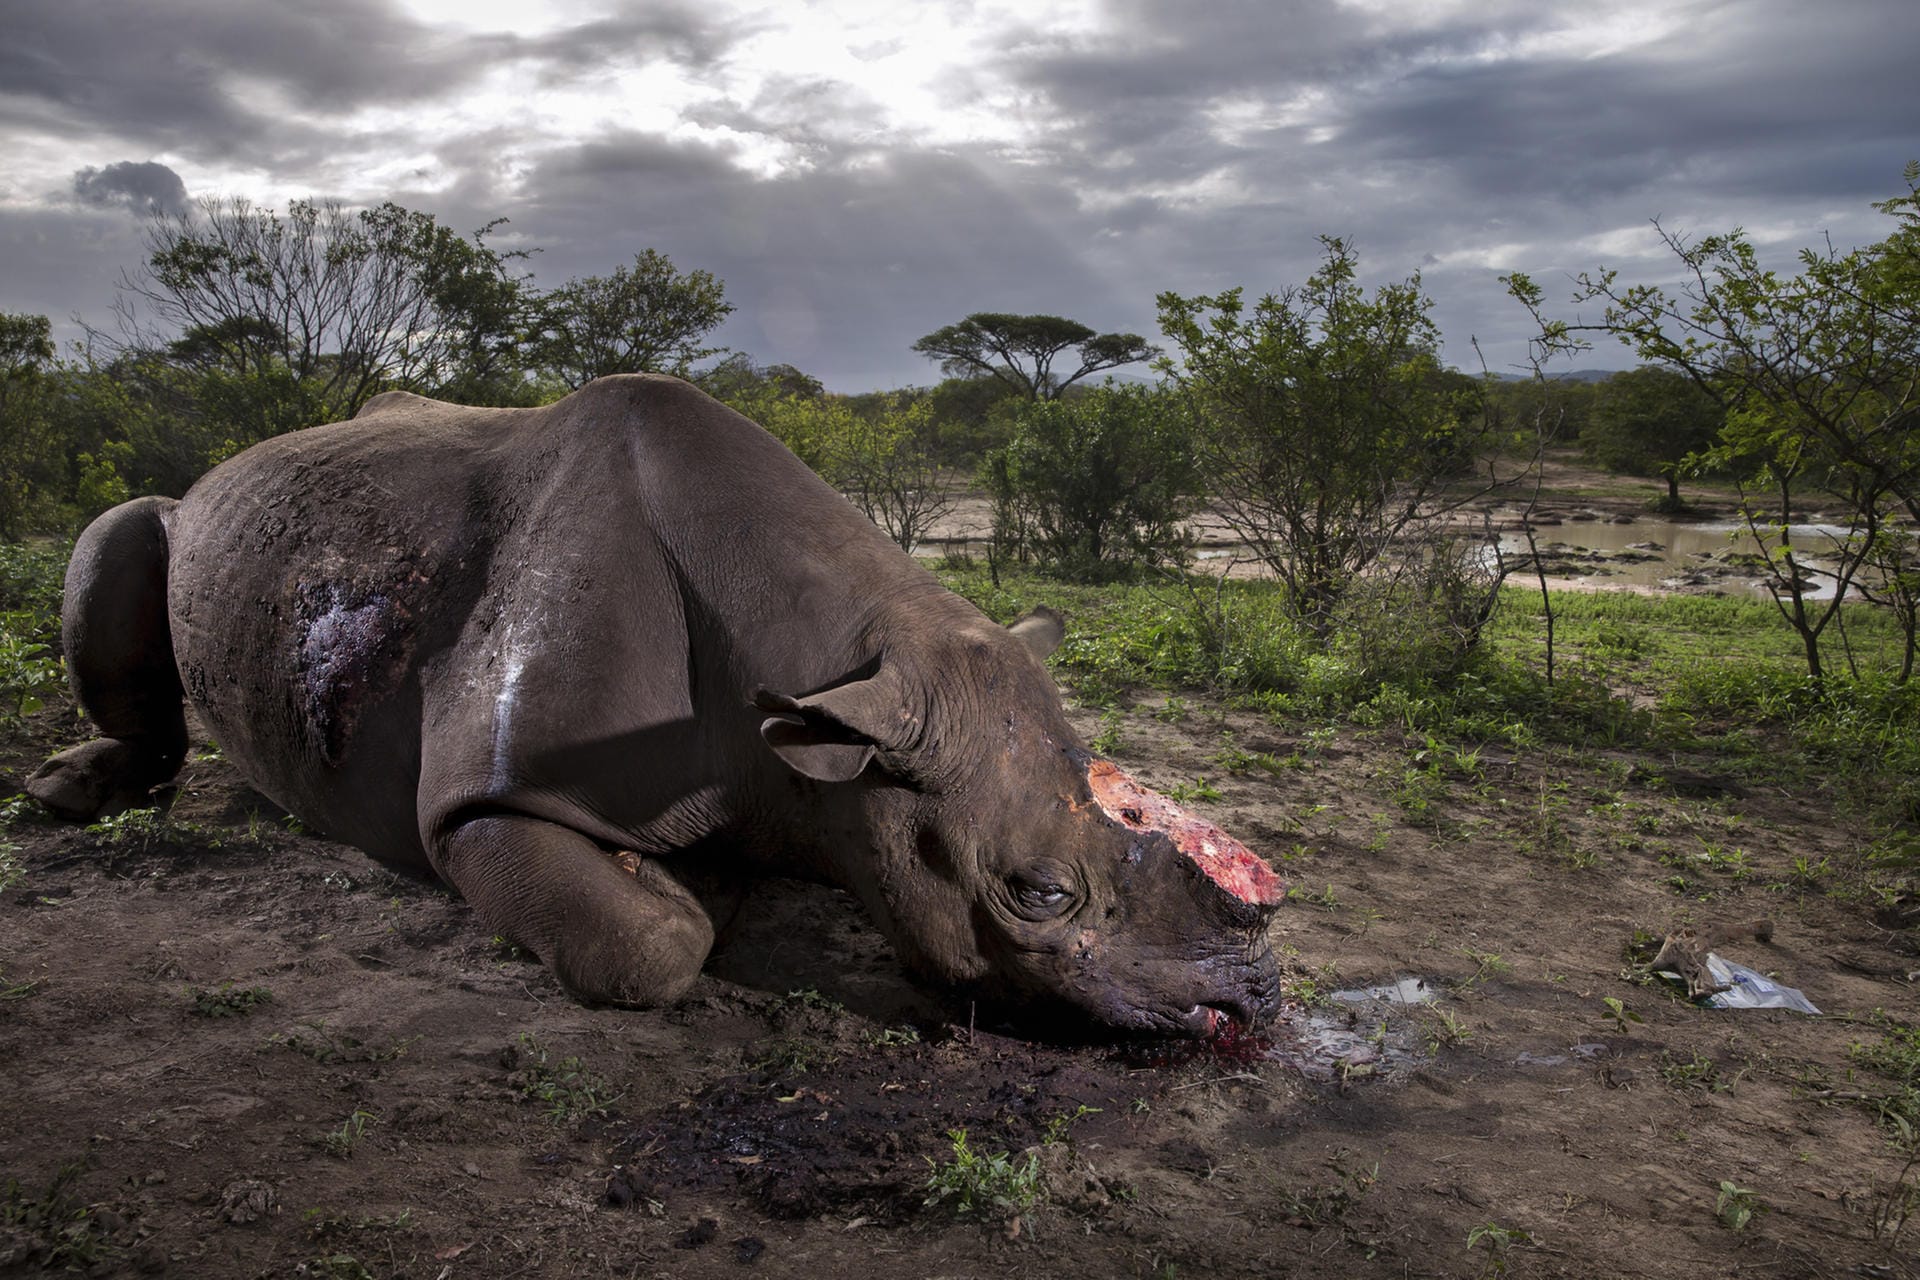 Ein illegal getötetes Spitzmaulnashorn mit abgehackten Hörnern liegt in einem Wildreservat in Südafrika. Das Bild ist zur Wildlife-Fotografie des Jahres 2017 gekürt worden.